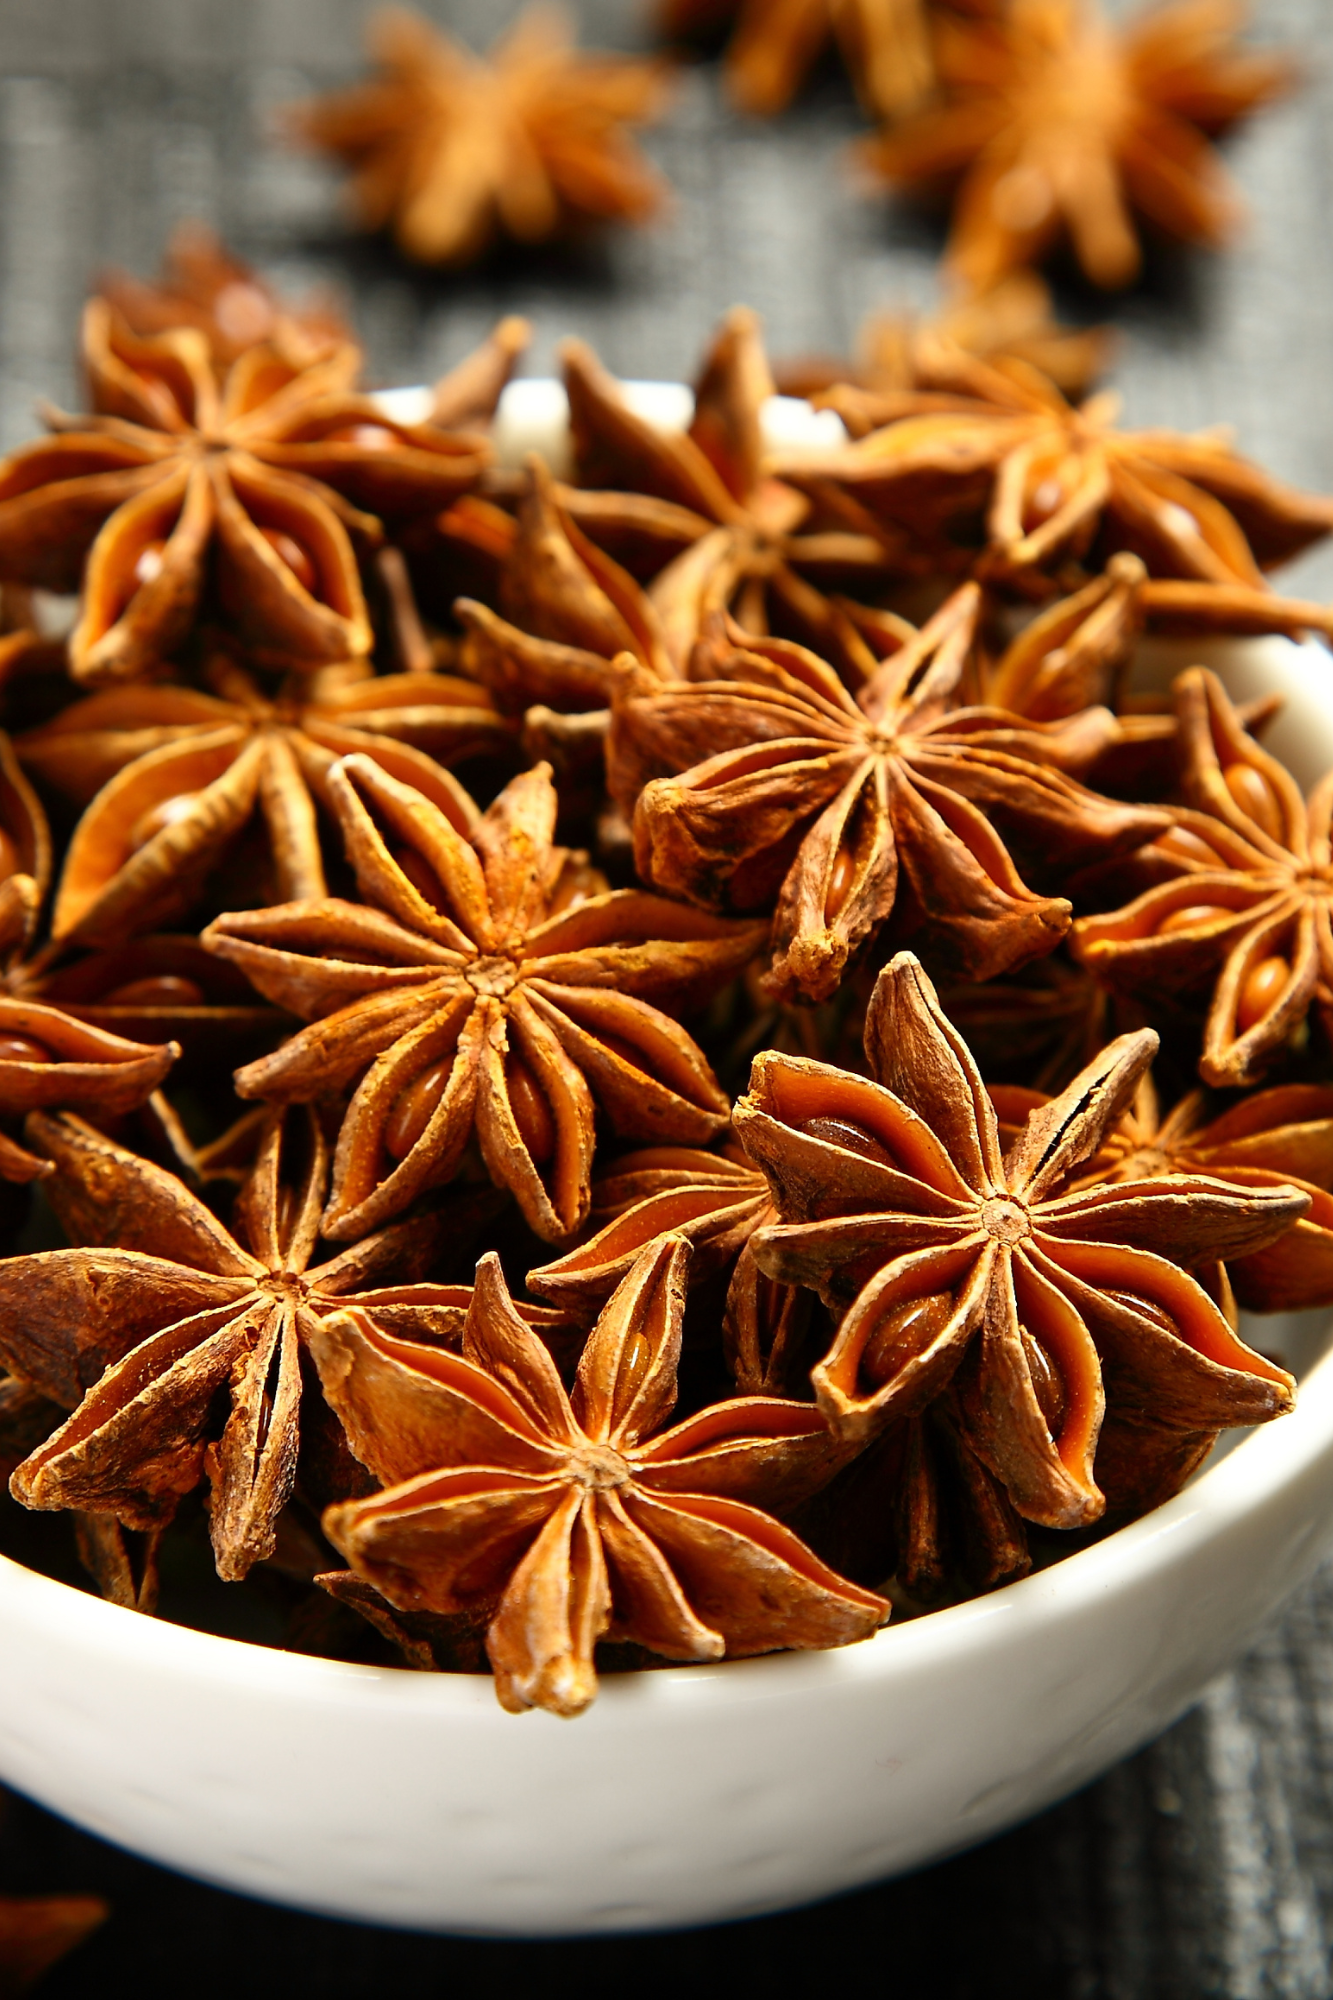 Badiane (anis étoilé, étoile de badiane) - Acheter, bienfaits, recettes